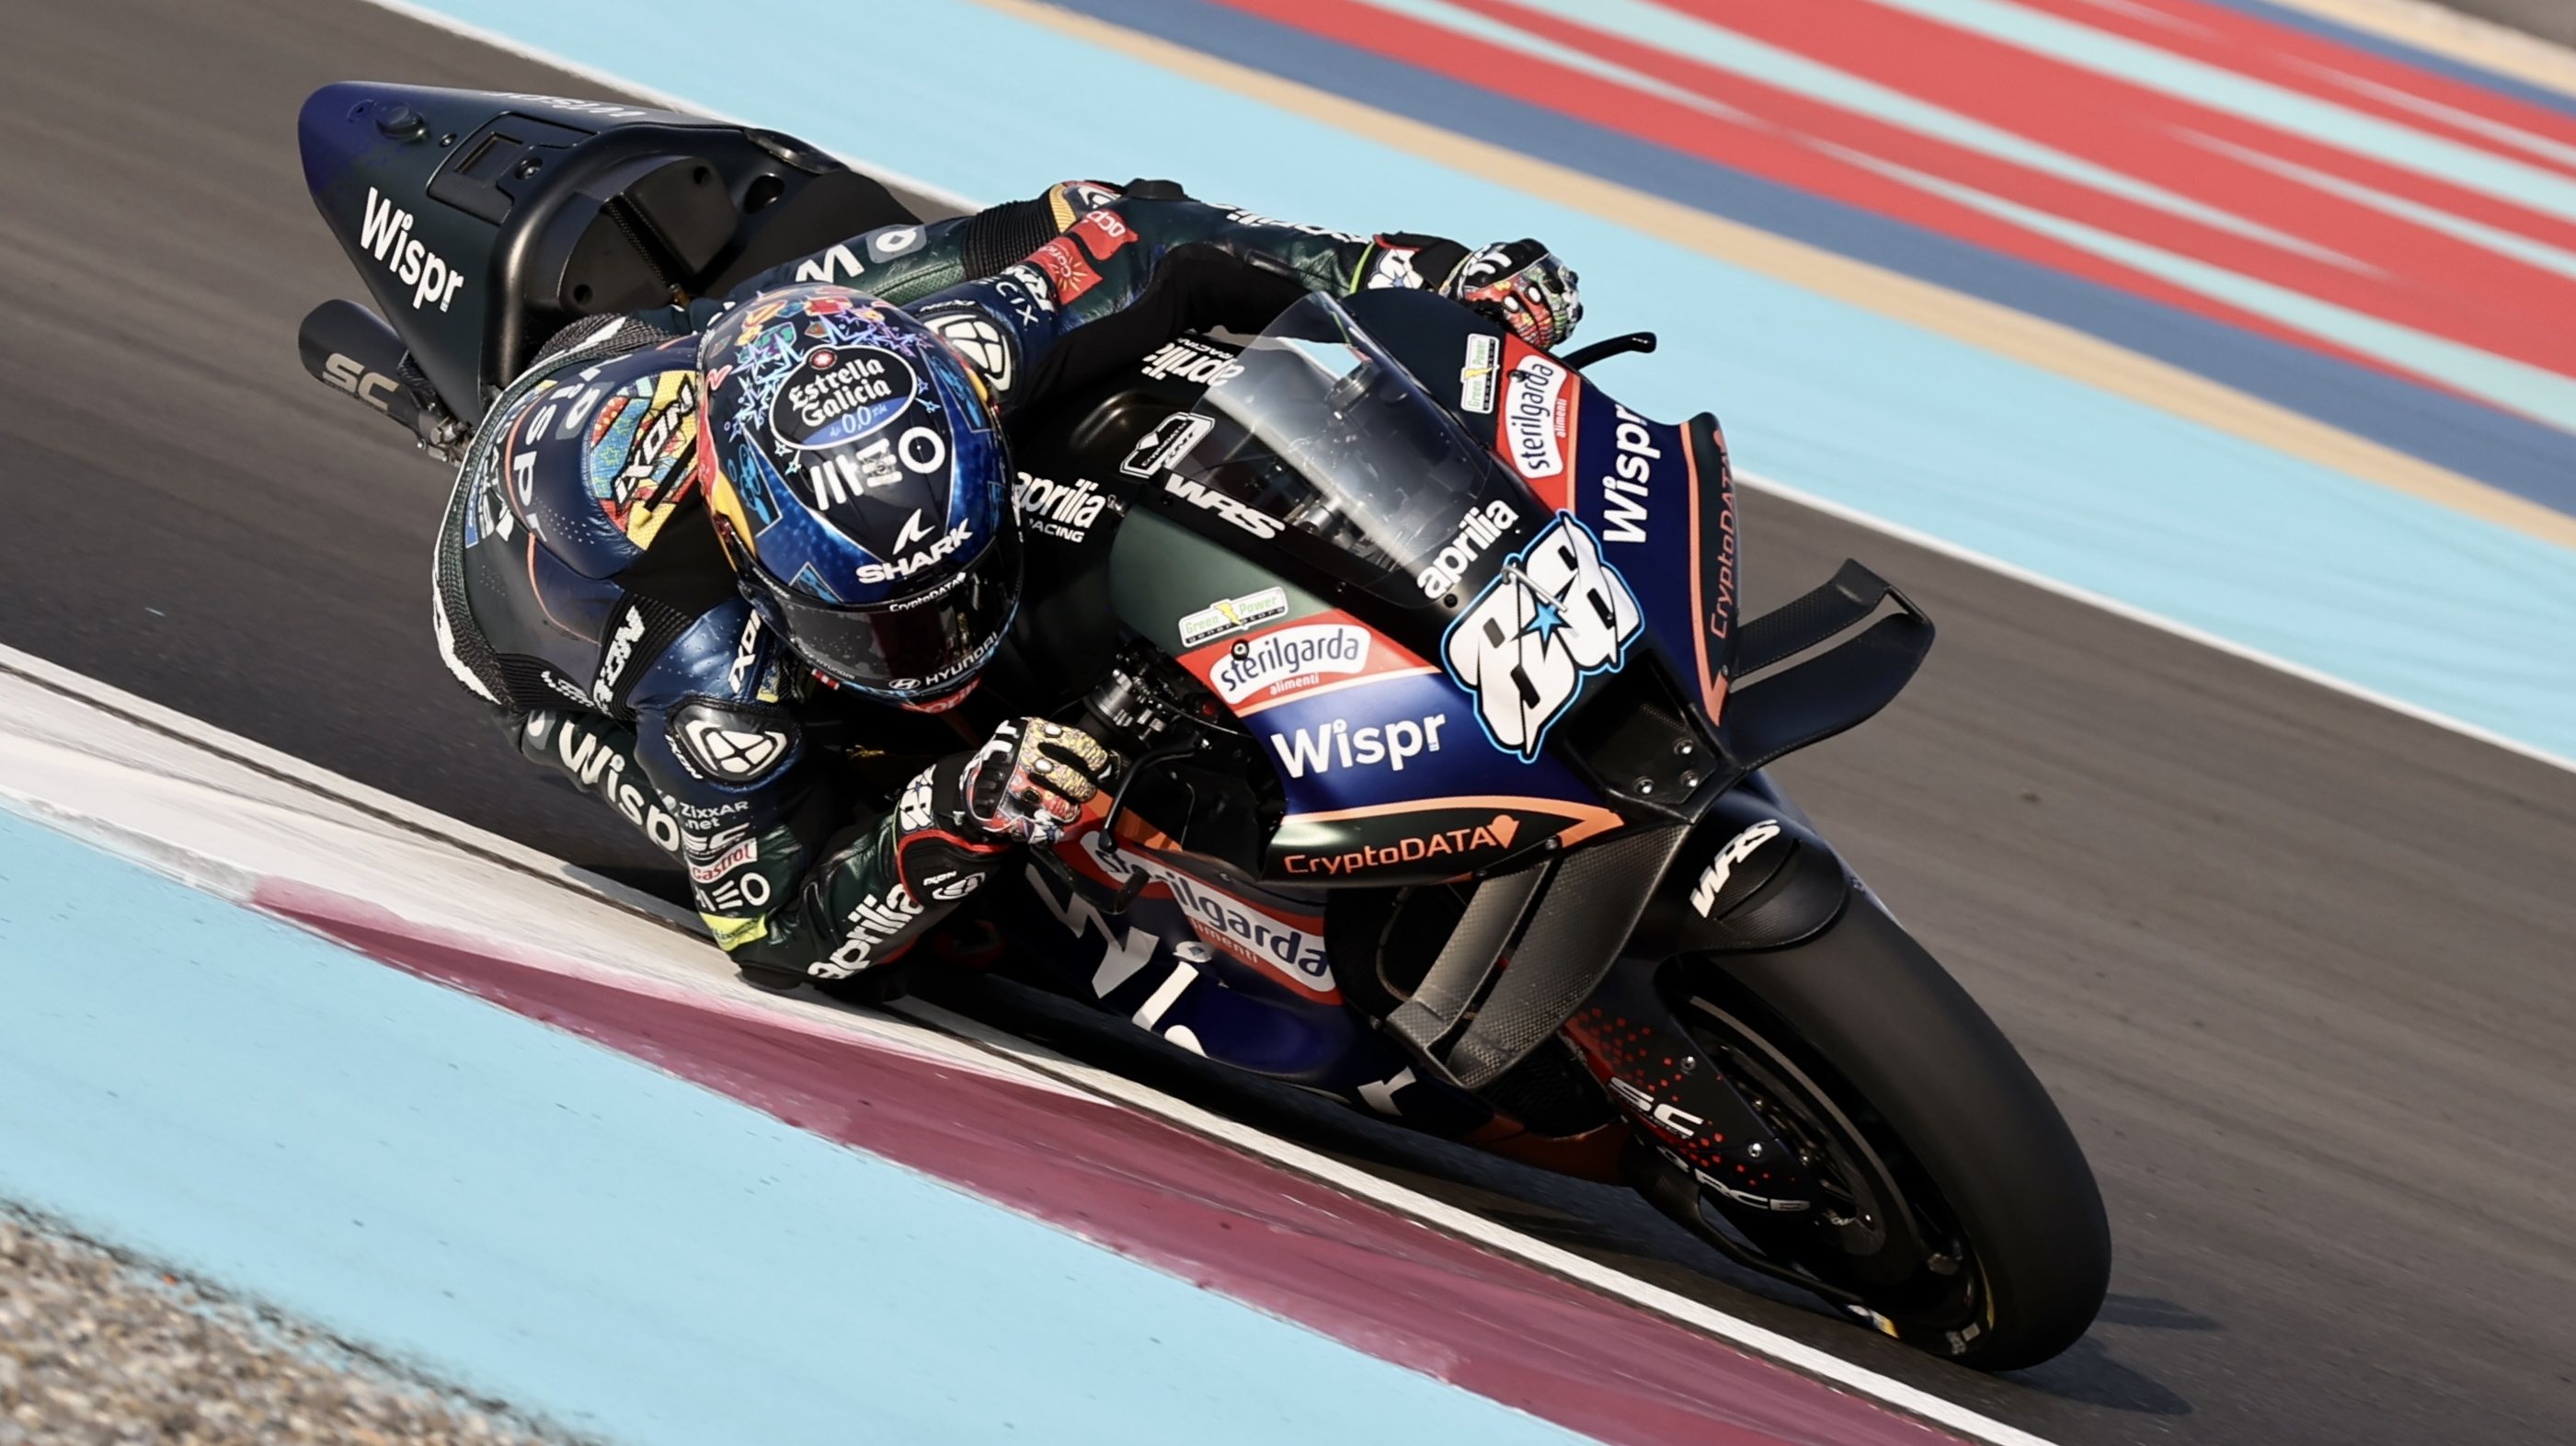 Moto GP - Qatar: Aprilia com excelente resultado na primeira corrida do ano  - Desporto - Andar de Moto